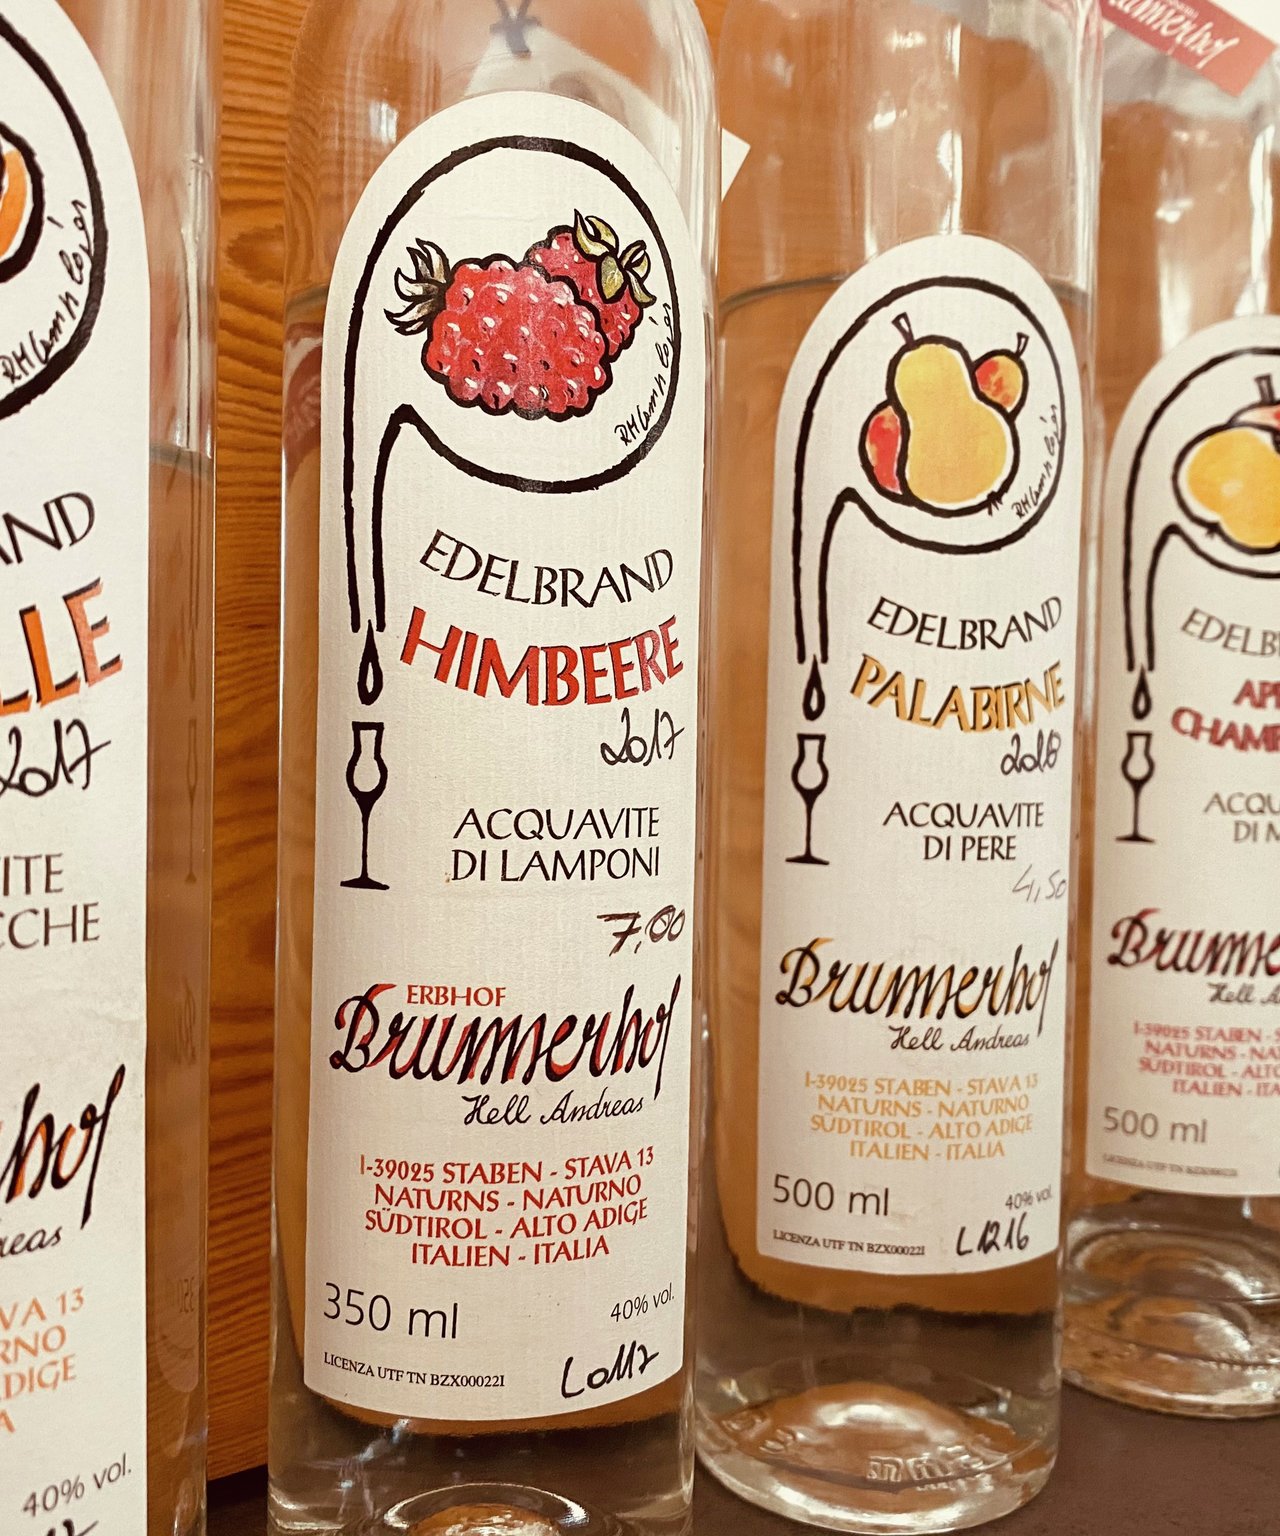 Brunnerhof Staben distilla molta frutta regionale, come albicocche della Val Venosta, prugne e palabirne, ma anche un'ottima grappa di Zweigelt.